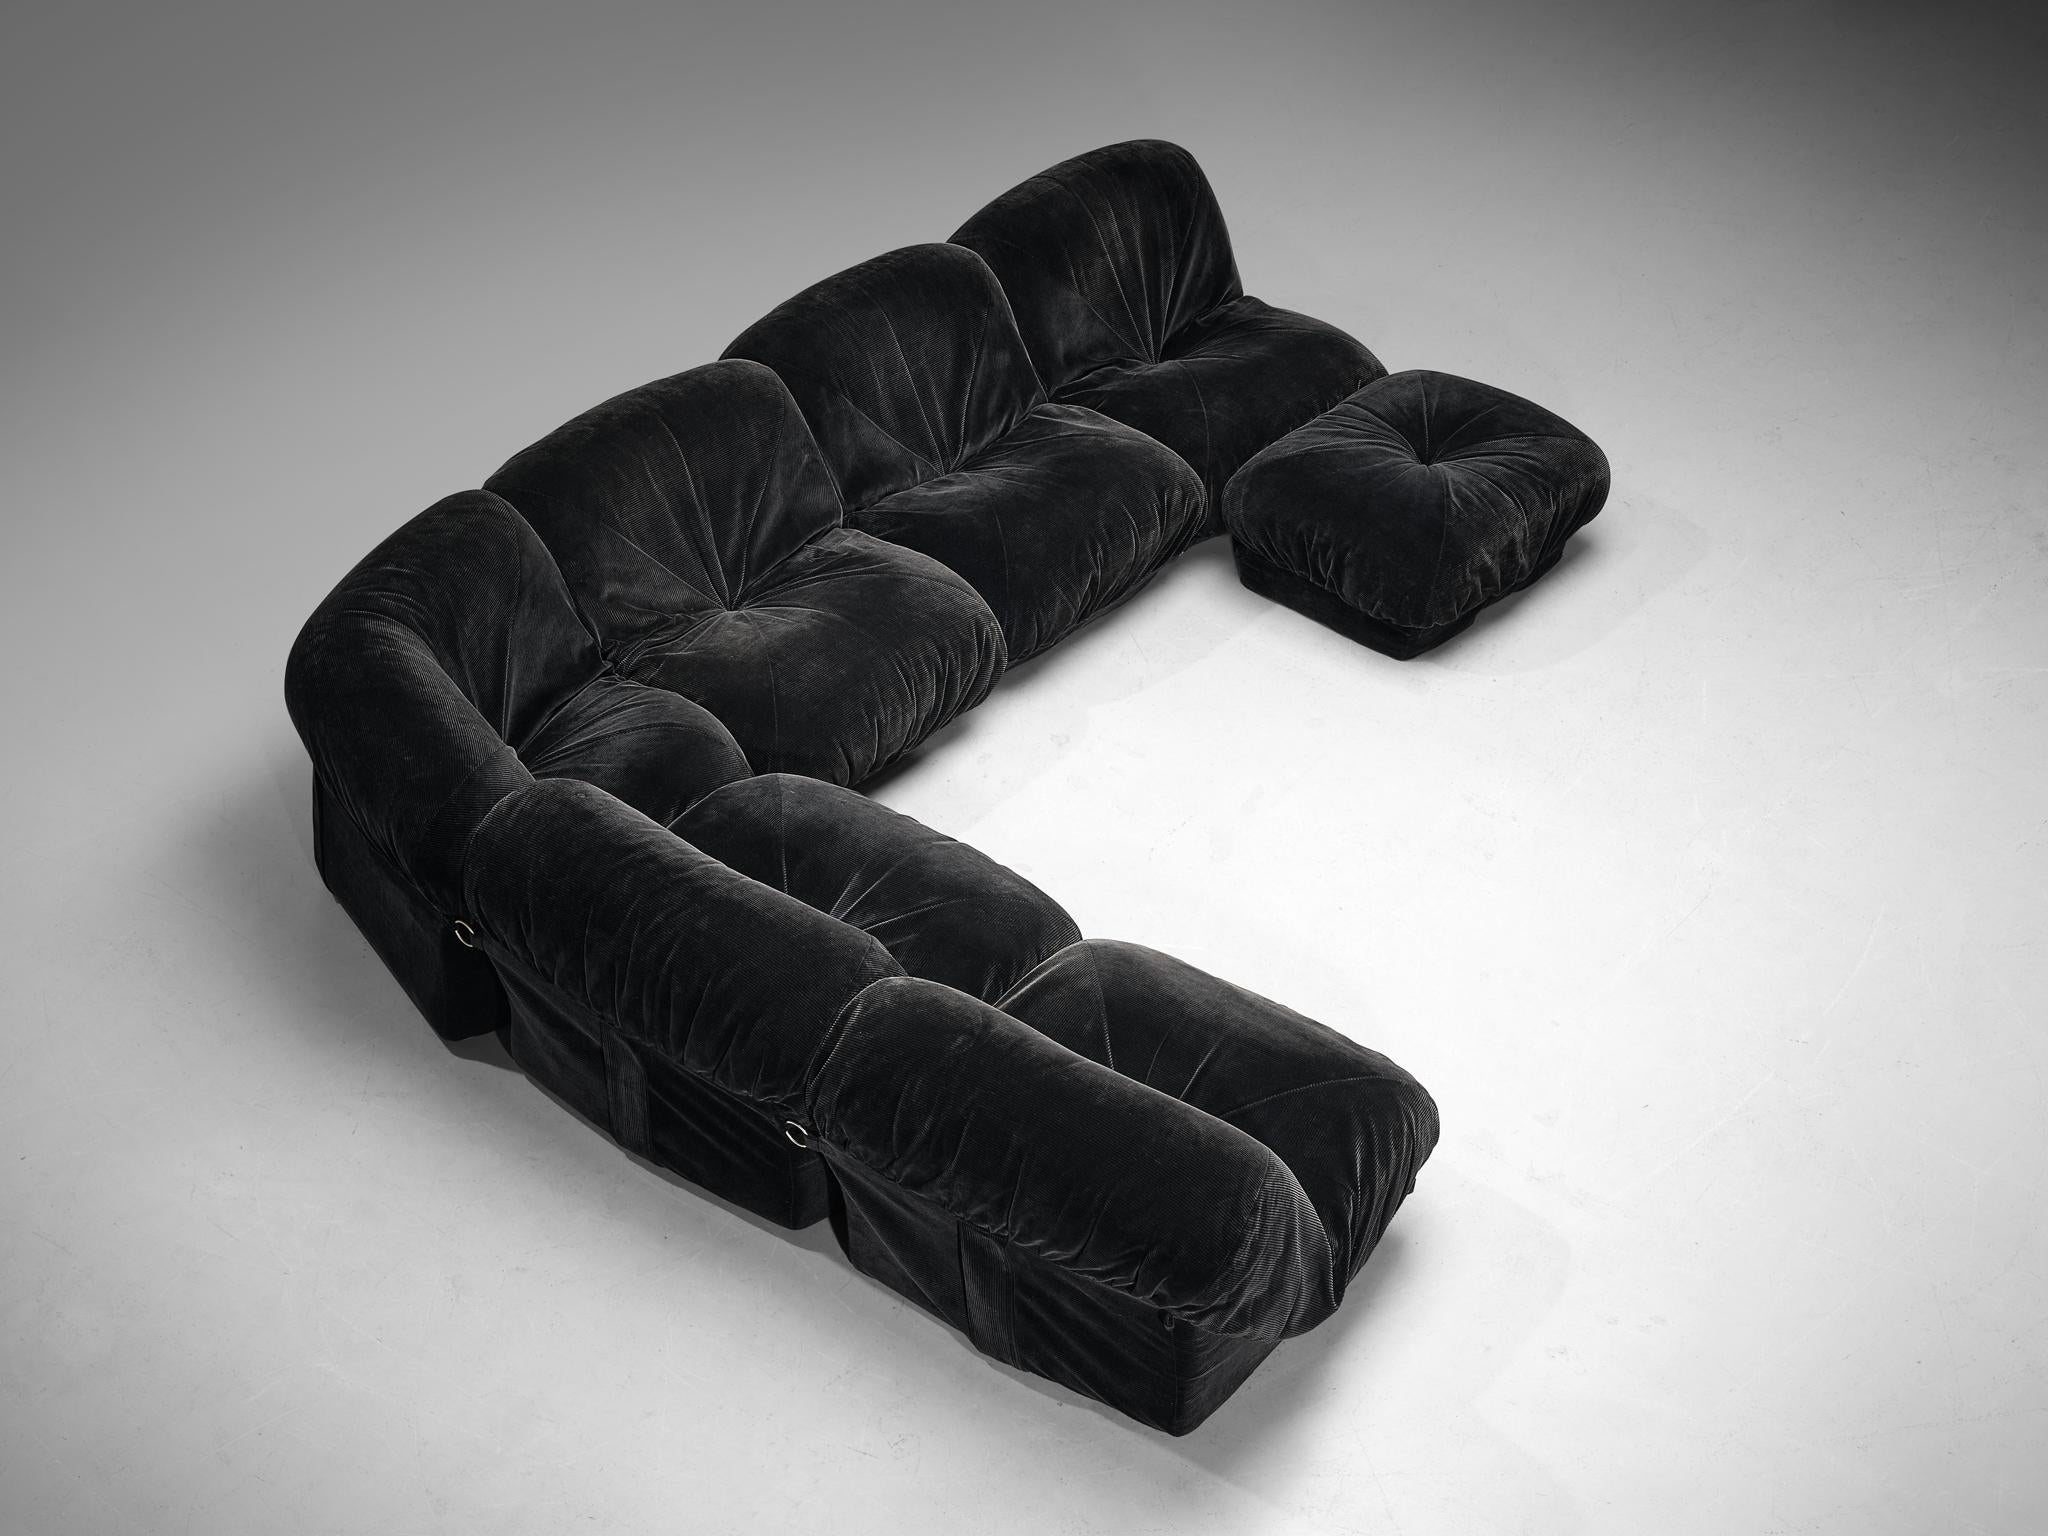 Airborne, Sektionssofa mit Ottomane Modell 'Patate', Samtkord, Metall, Frankreich, 1970er Jahre 

Dieses gut durchdachte Sofa ist vollständig in schwarzem Samtcord ausgeführt, der zu einem einheitlichen Look beiträgt. Dieses Sofa zeichnet sich durch